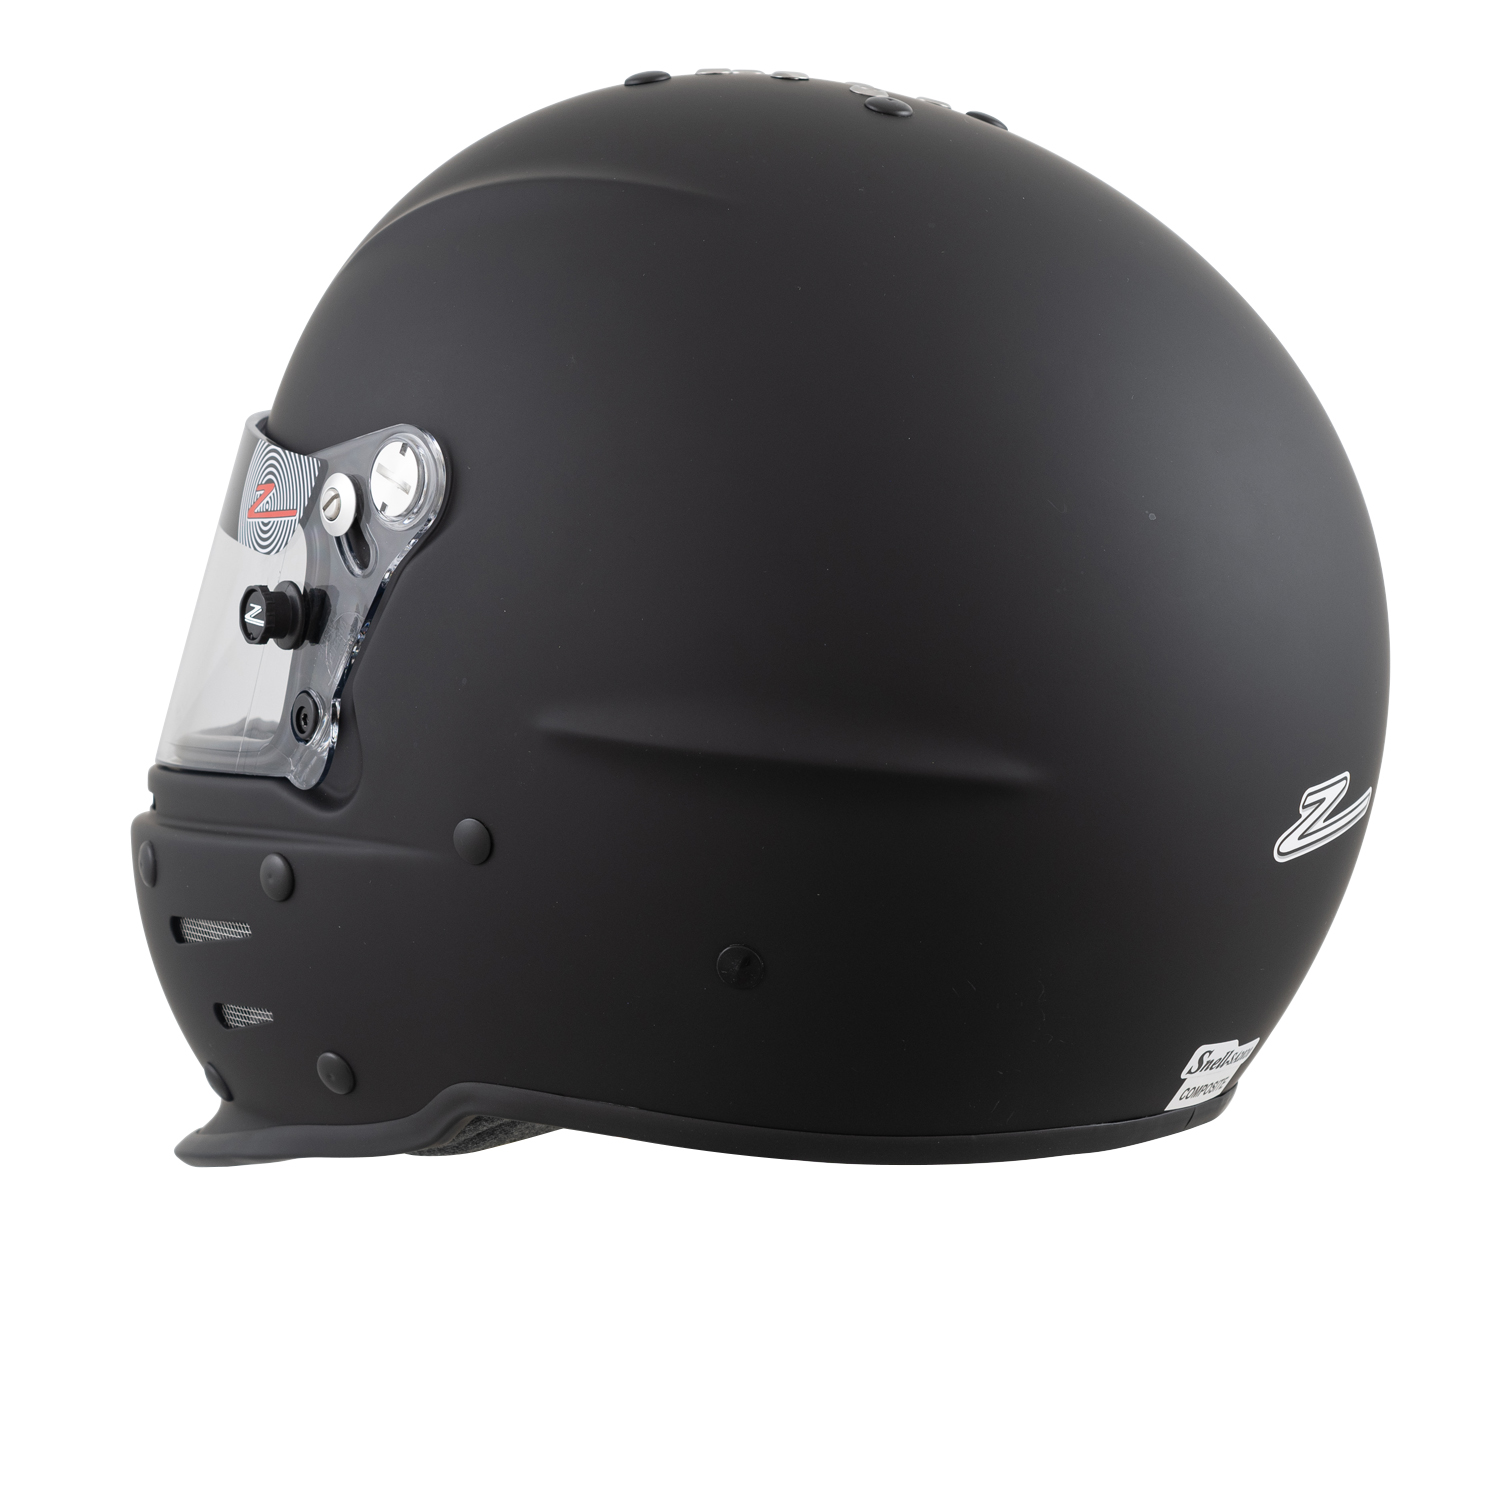 Zamp Europe - RZ-62 Helmet